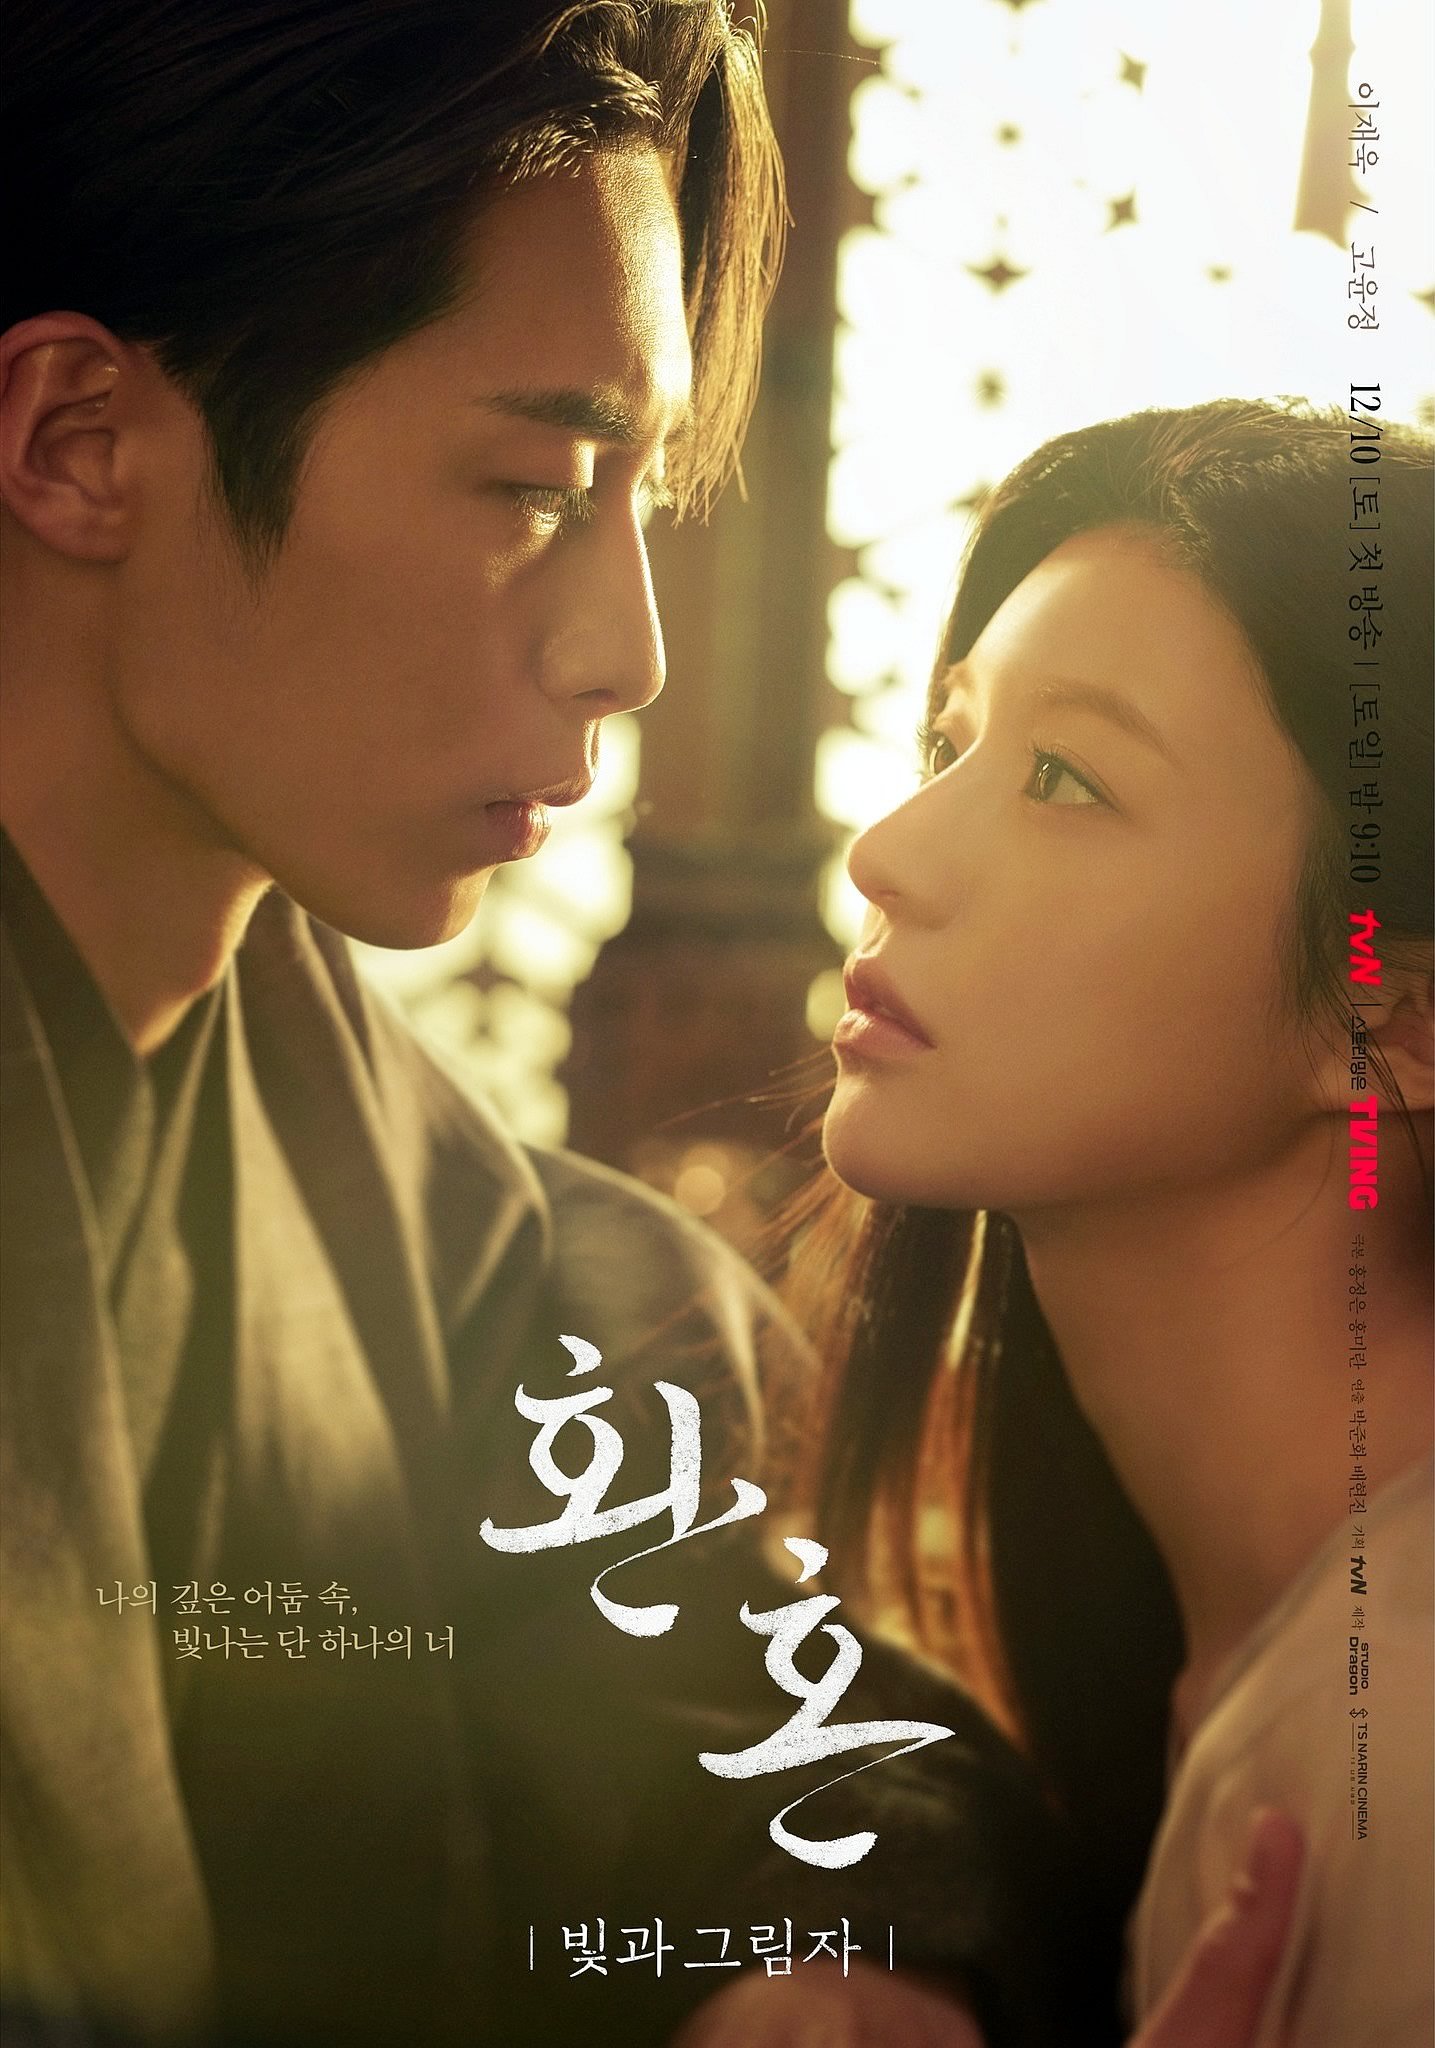 Alquimia das Almas 2 | Lee Jae Wook e Go Yoon Jung em novo pôster da série k-drama sul-coreana da tvN